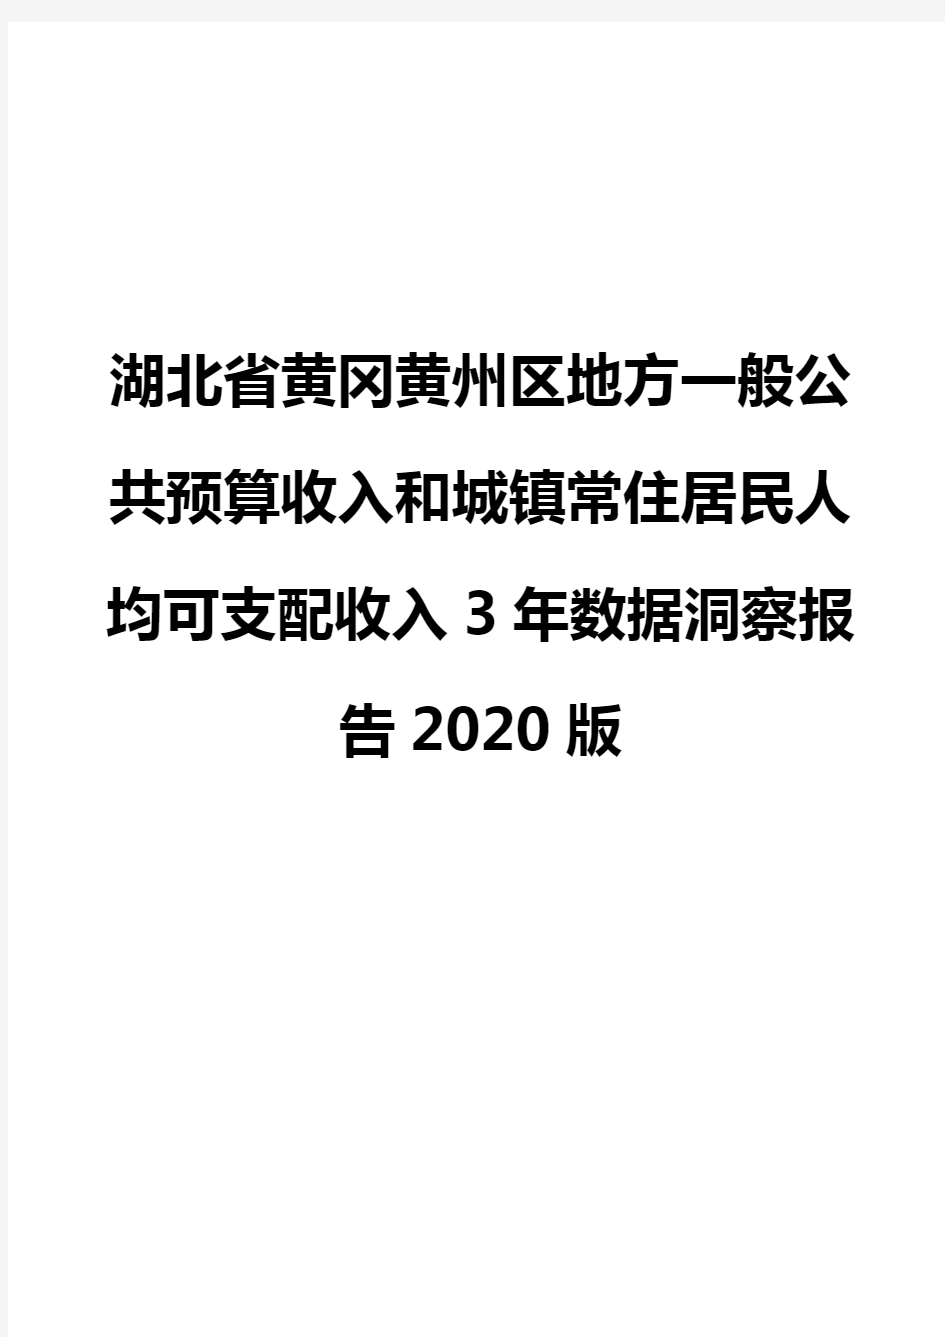 湖北省黄冈黄州区地方一般公共预算收入和城镇常住居民人均可支配收入3年数据洞察报告2020版